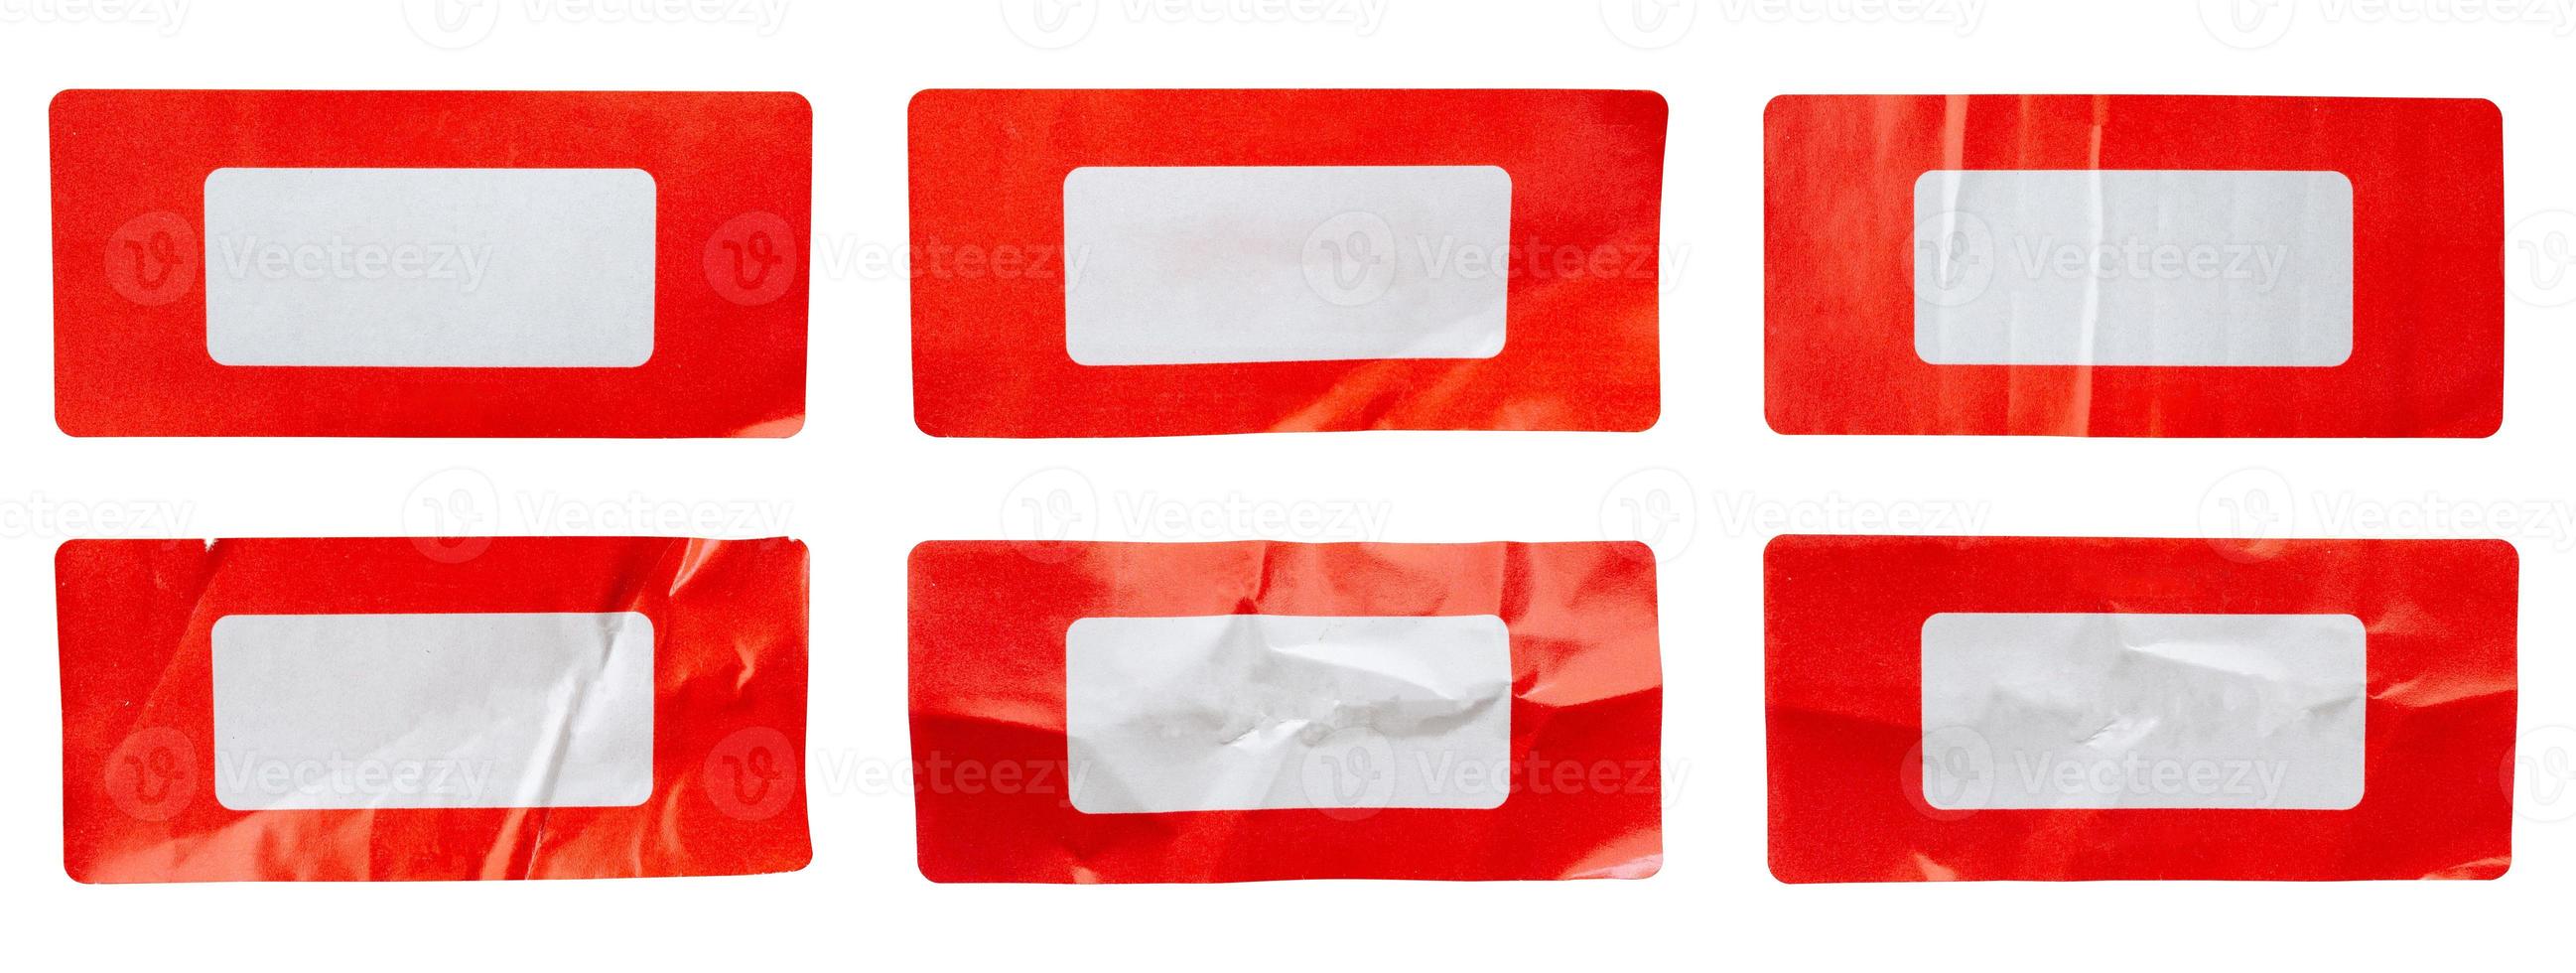 röd papper klistermärke märka uppsättning isolerat på vit bakgrund foto